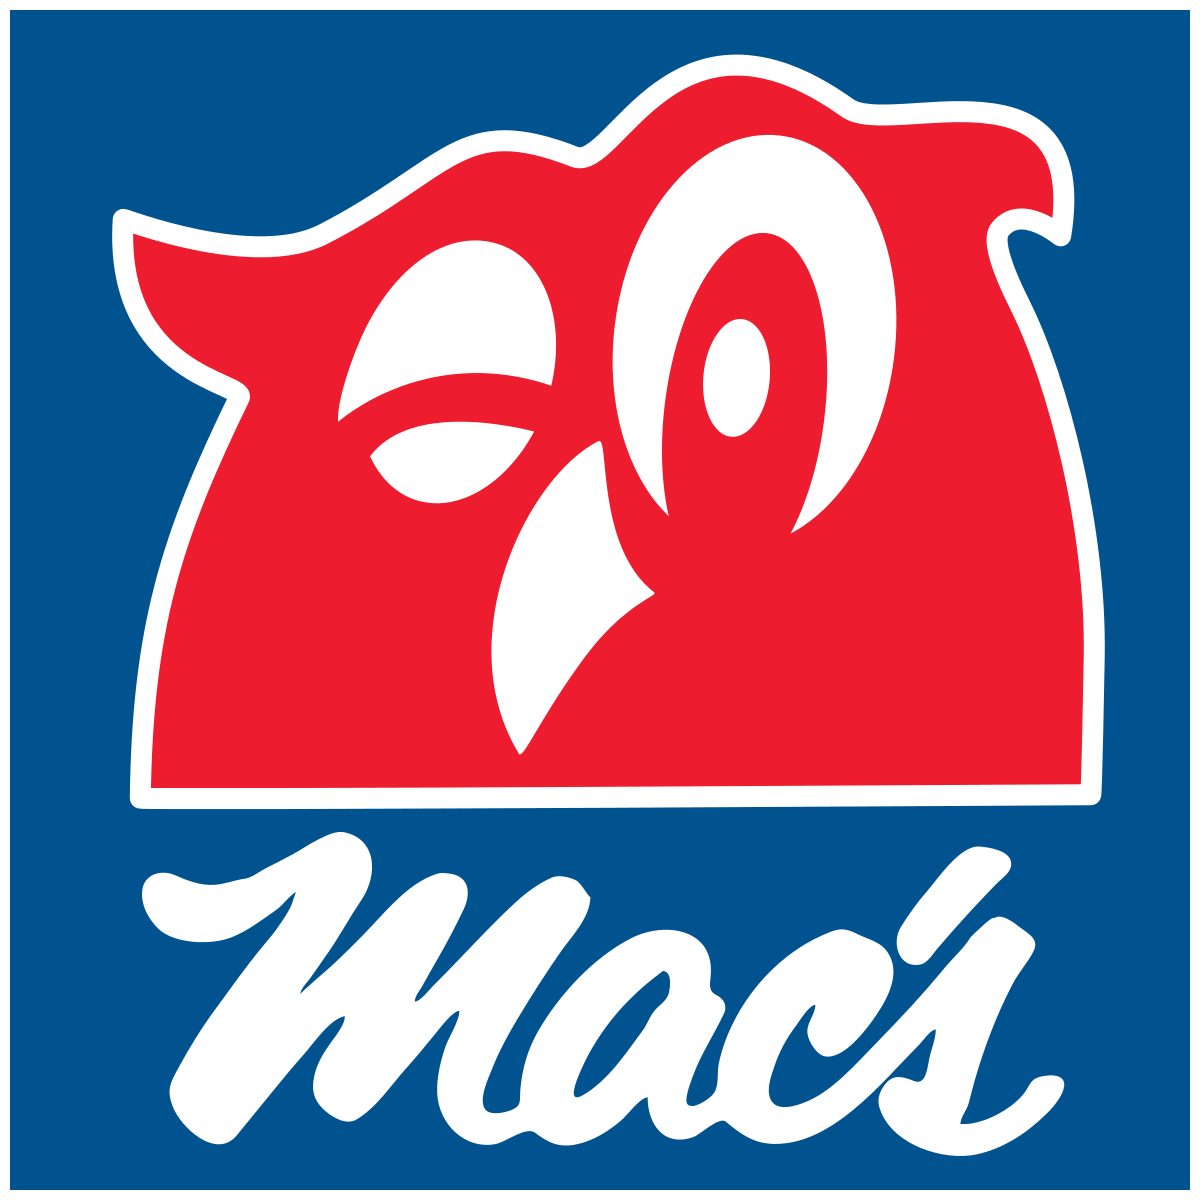 Mac’s logo